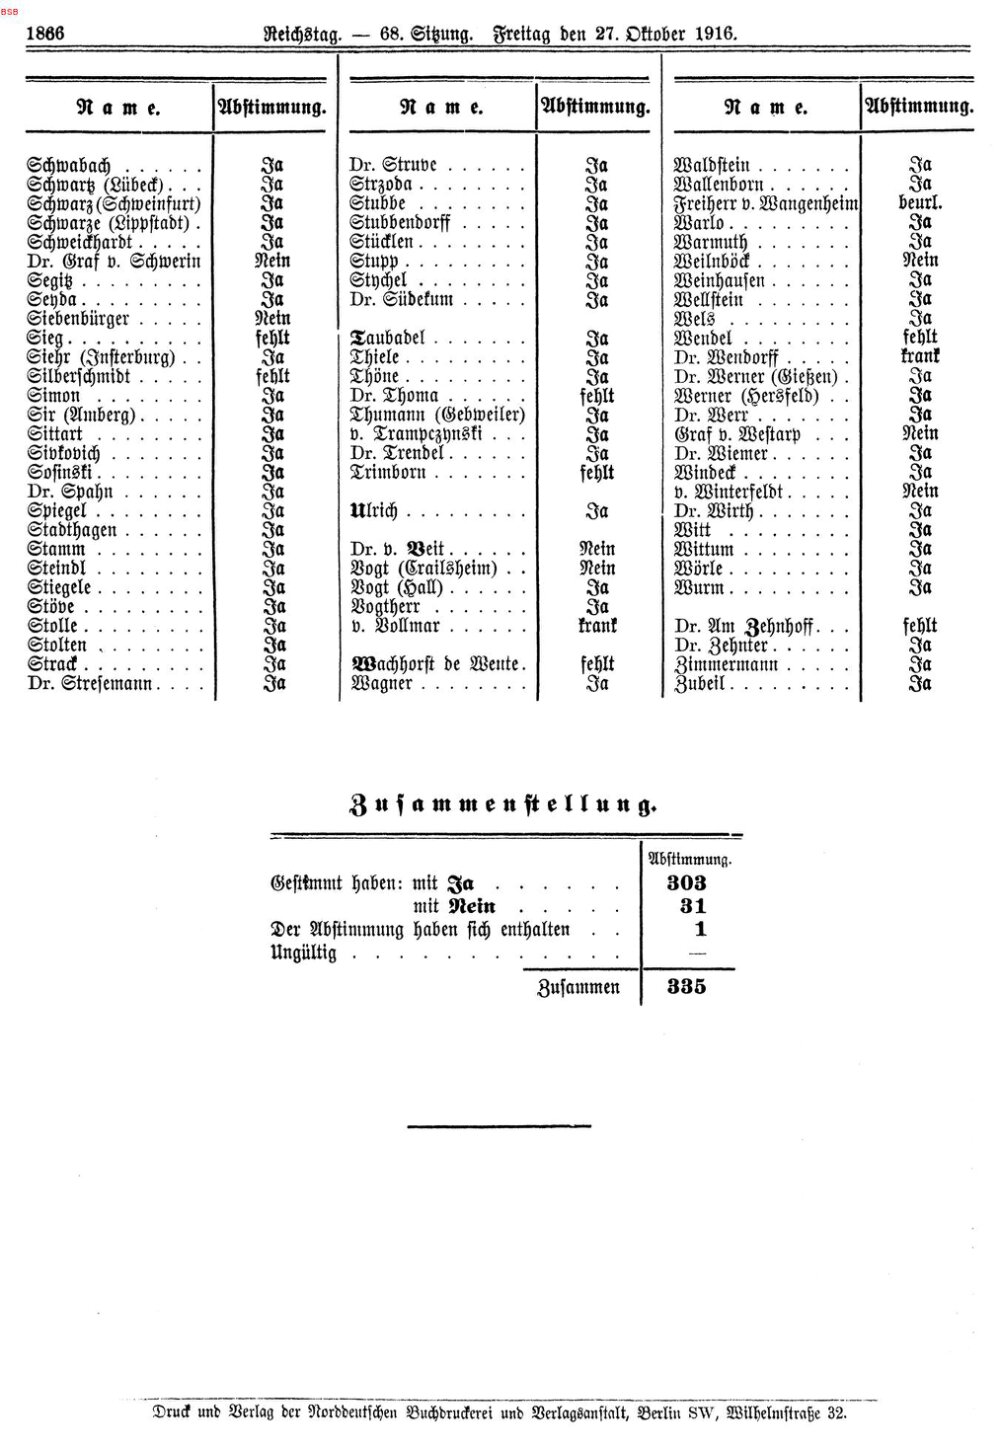 Scan der Seite 1866